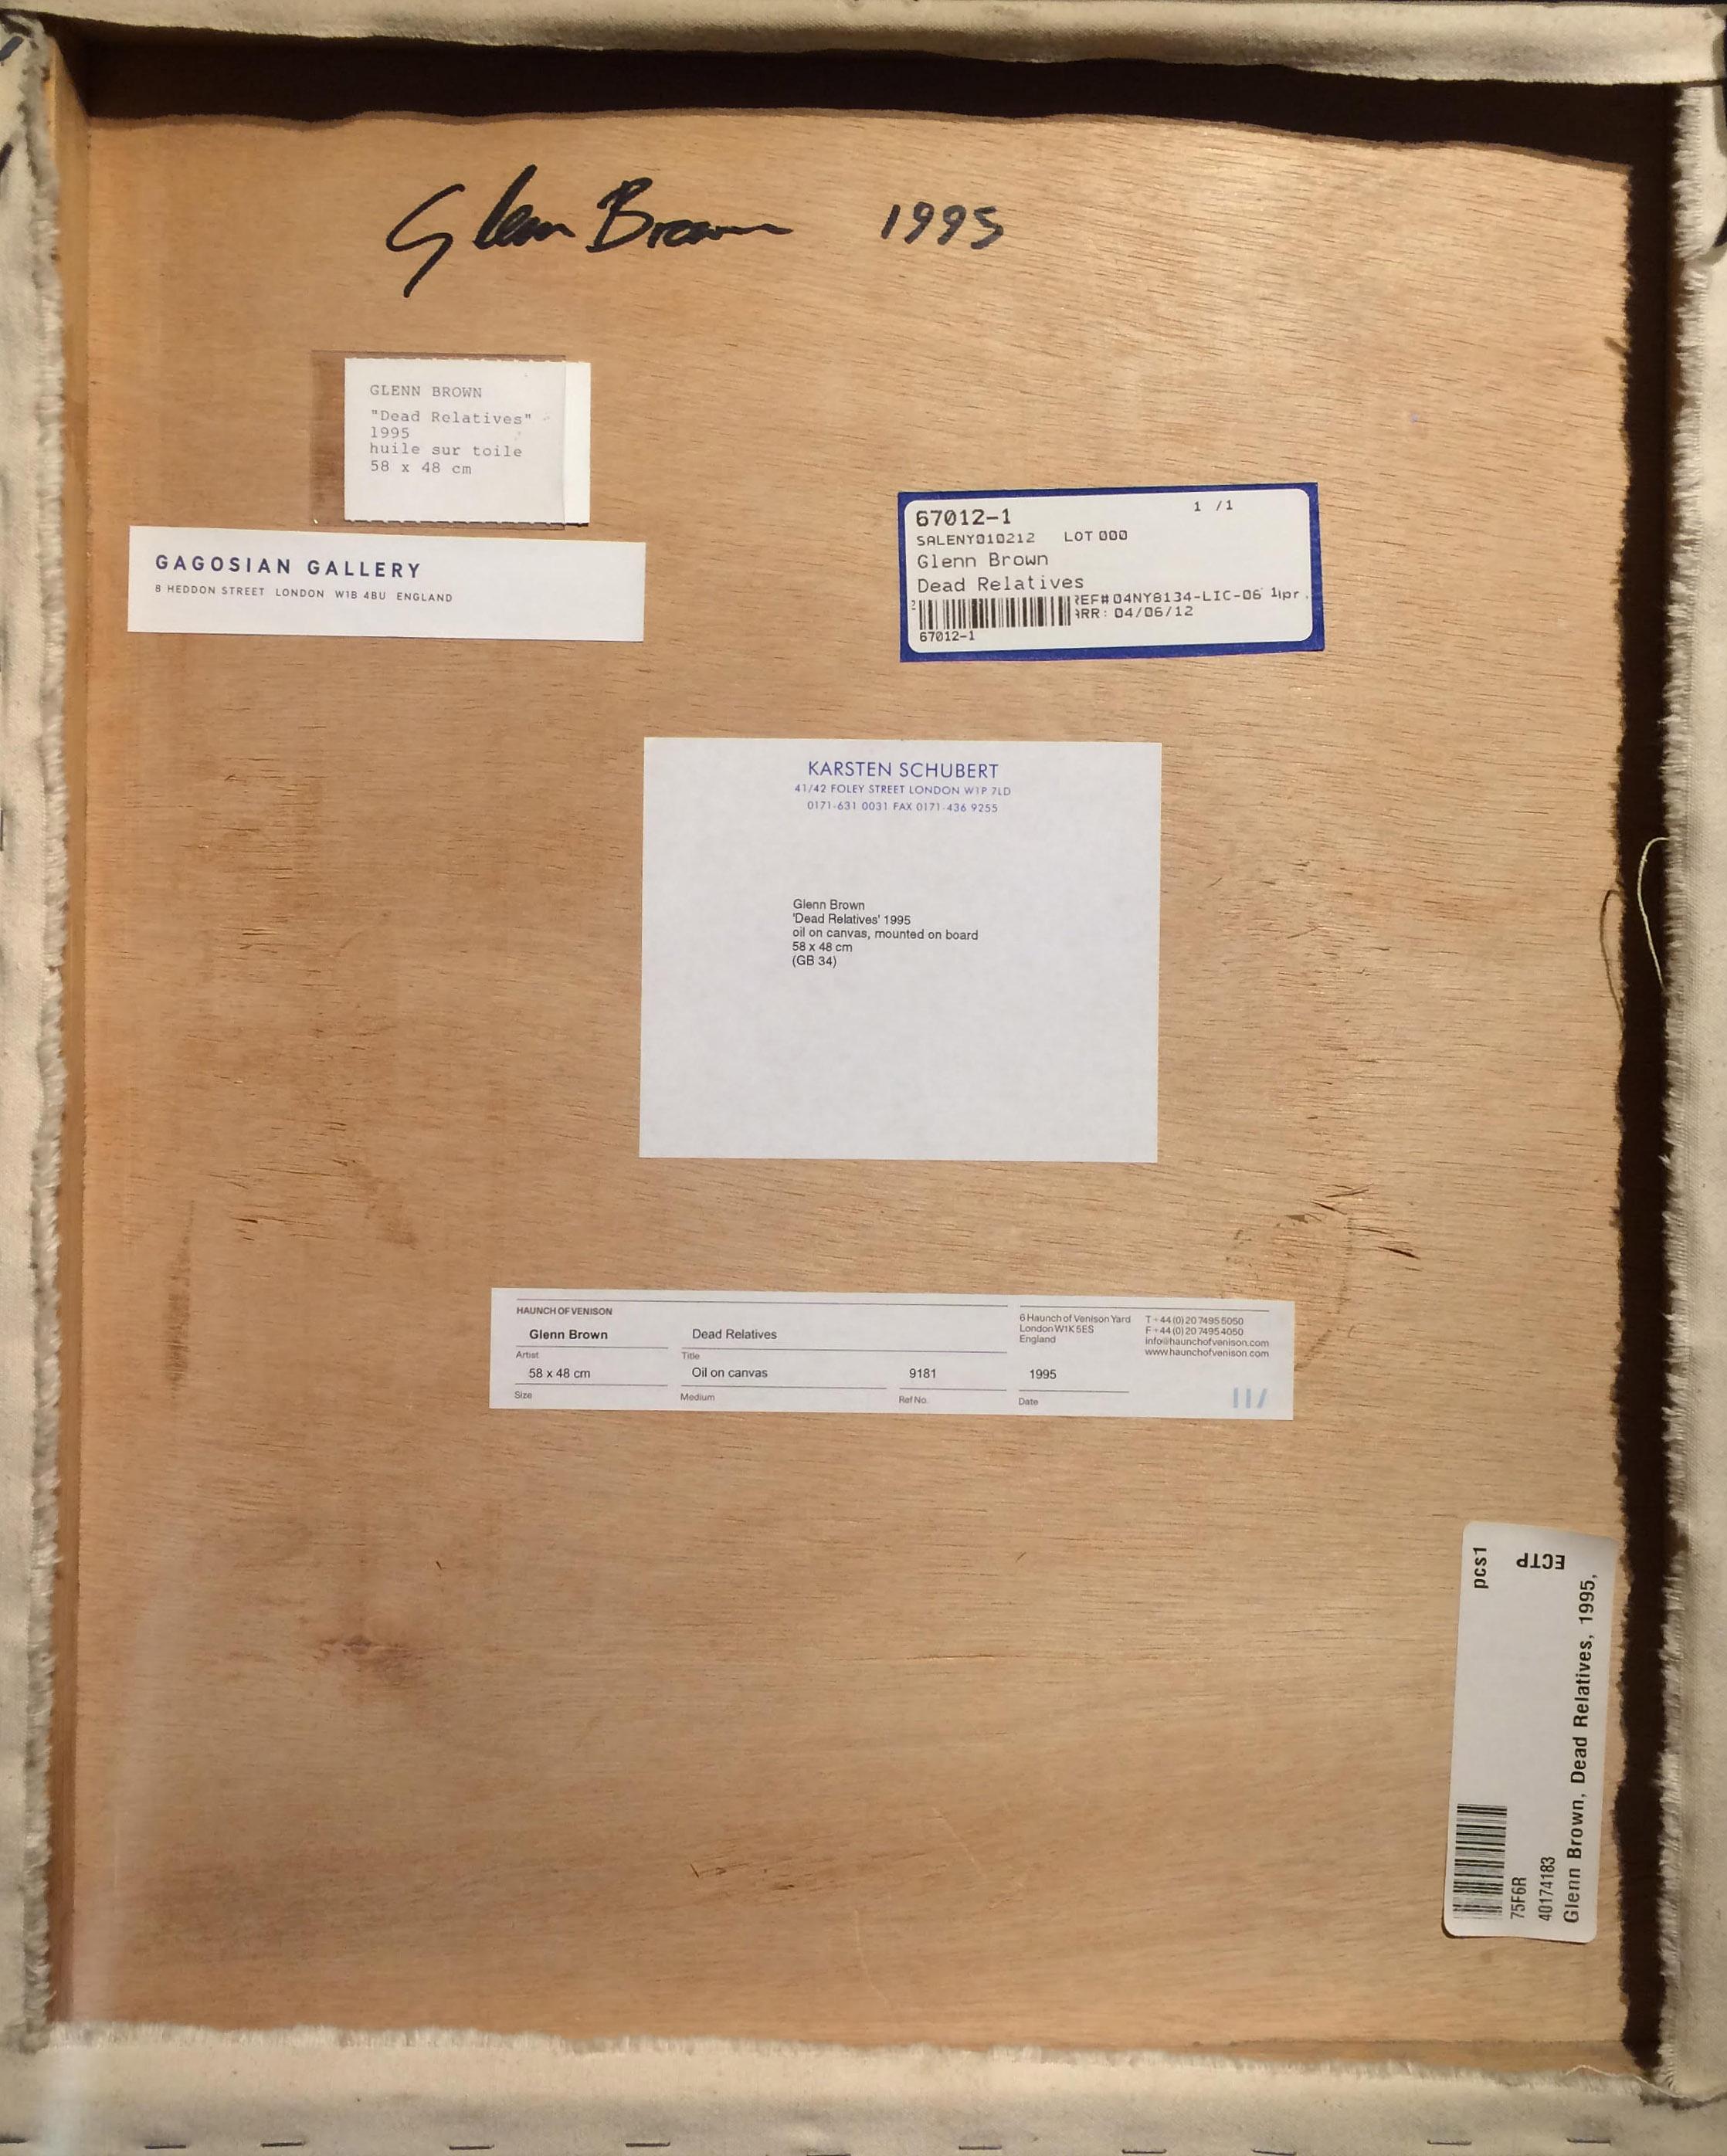 Dead Relatives - Glenn Brown, art contemporain, abstrait, portrait, Auerbach en vente 3